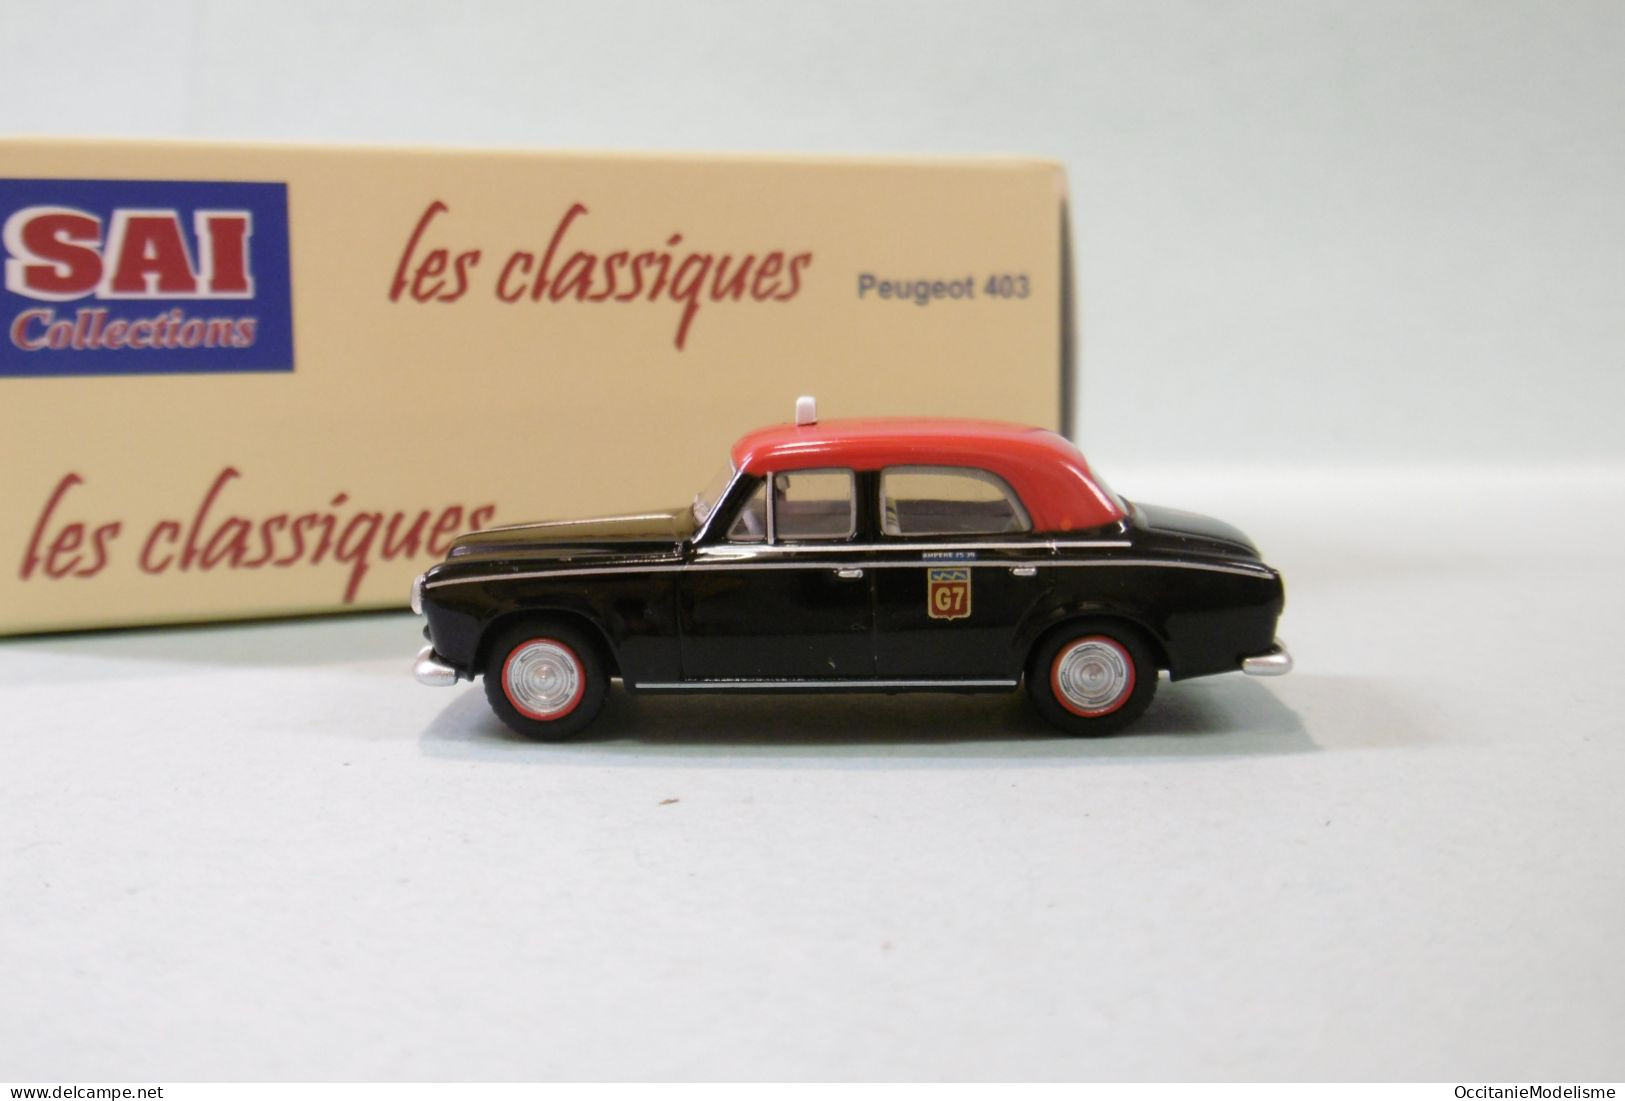 SAI Les Classiques - PEUGEOT 403 7 Taxi G7 1960 Réf. 6241 Neuf NBO HO 1/87 - Veicoli Da Strada